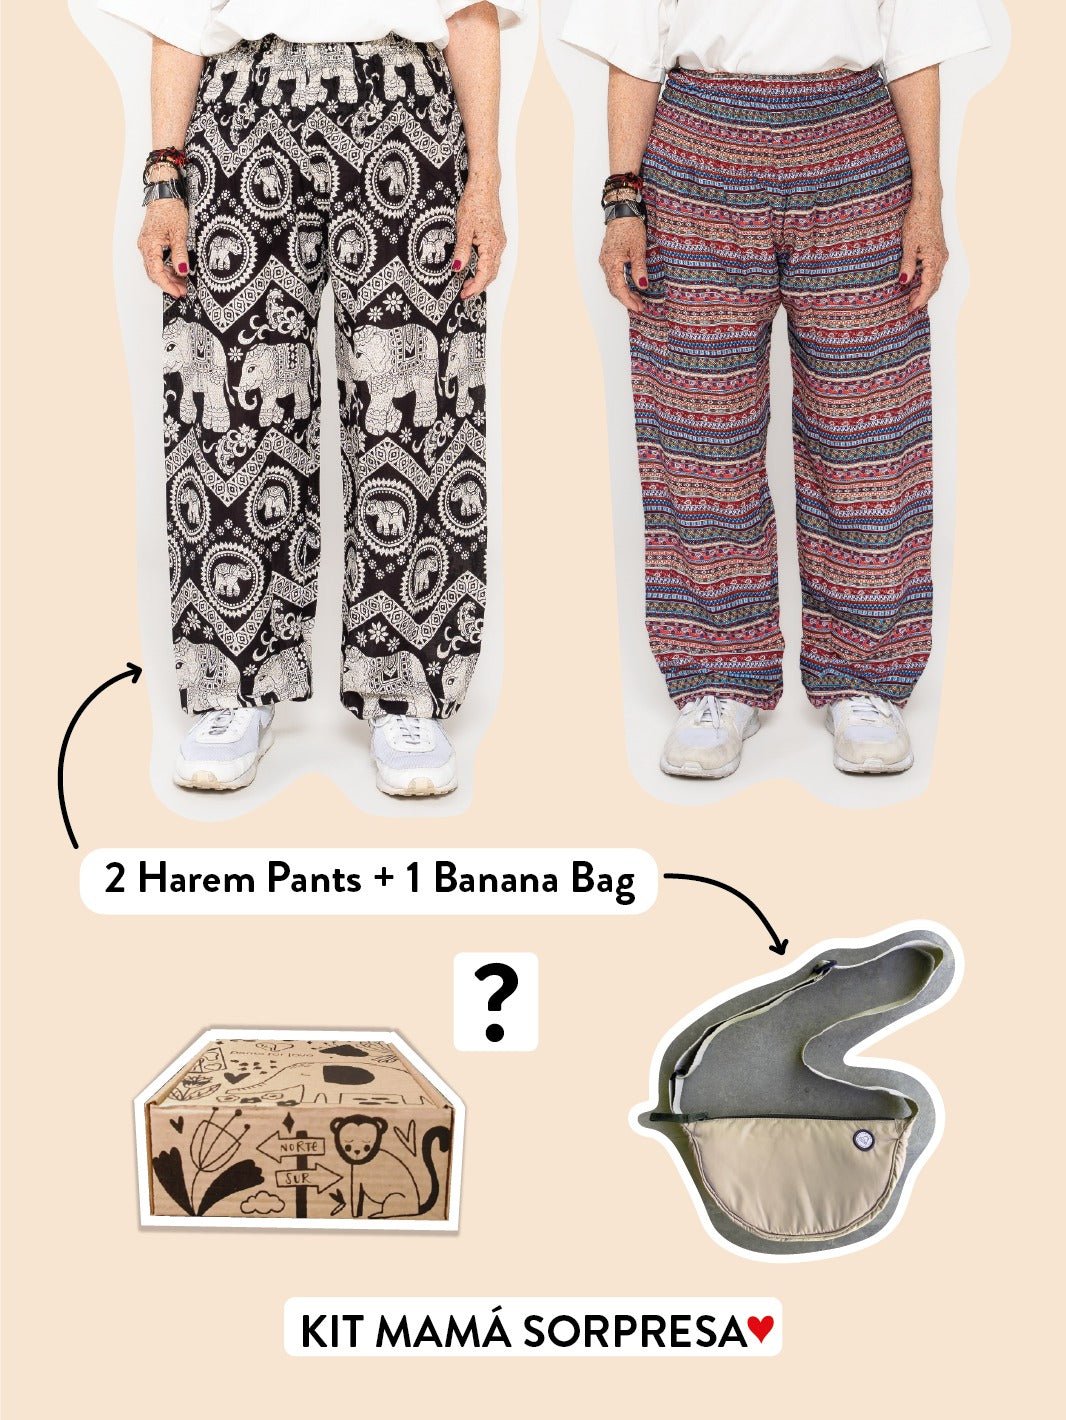 KIT MAMÁ SORPRESA: 2 HAREM PANT + 1 BANANA BAG - Pantsforlove Pantalones anchos, pantalones yoga